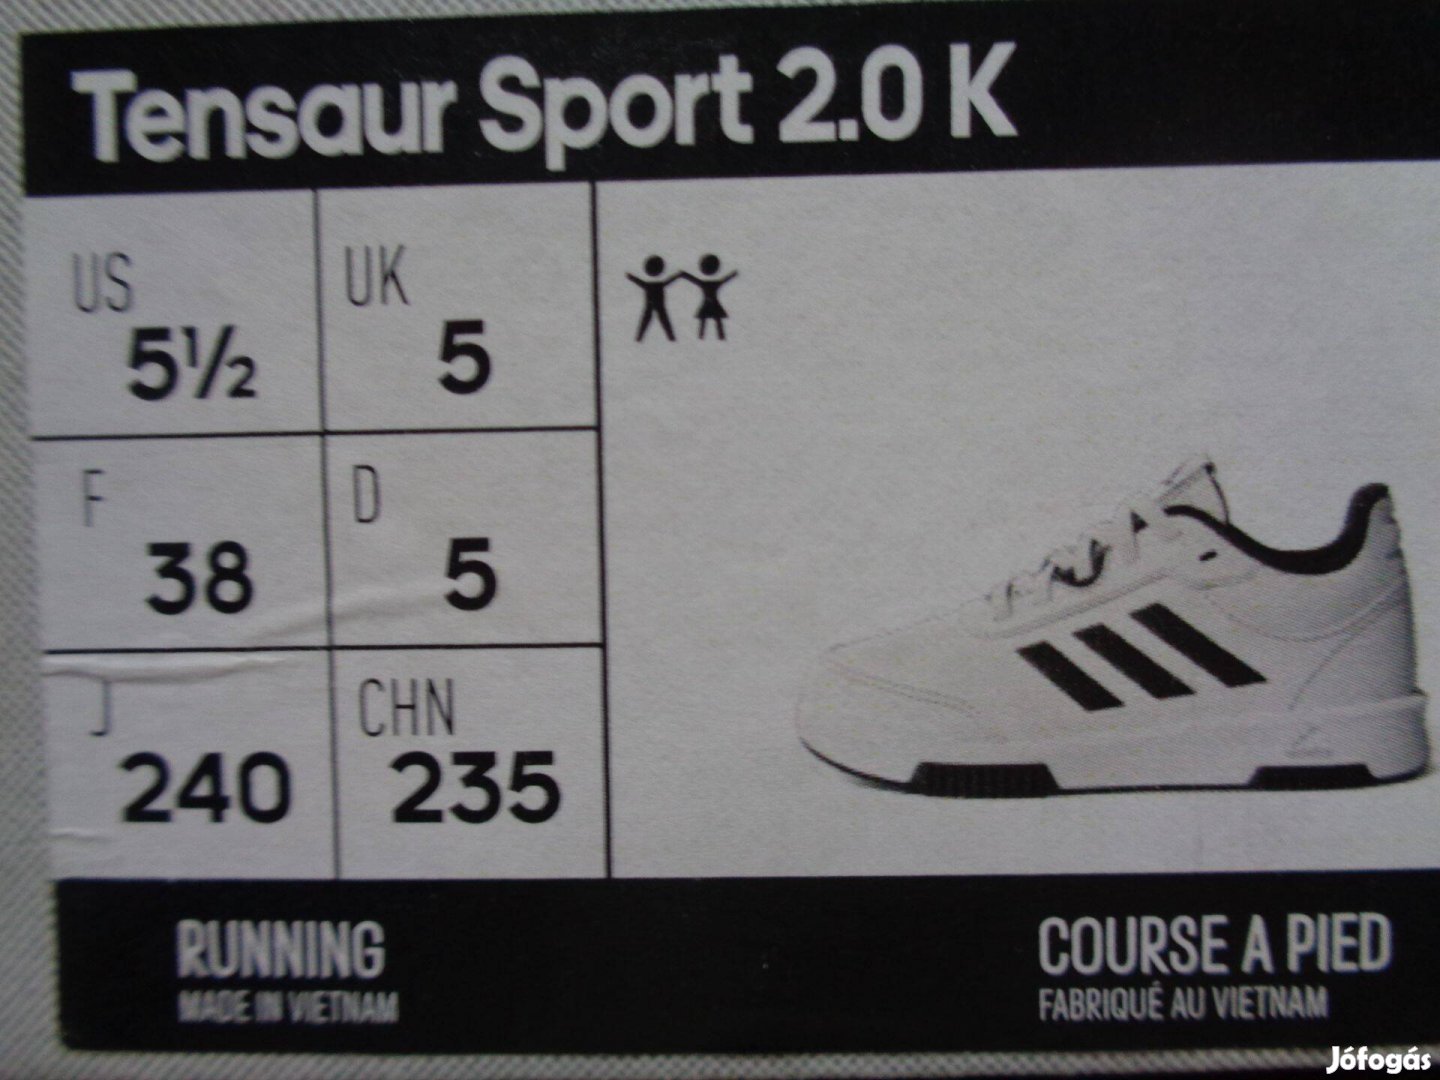 Új eredeti Adidas Tensaur Sport 2.0 K 38-as 38 gyerek futócipő 2 szín